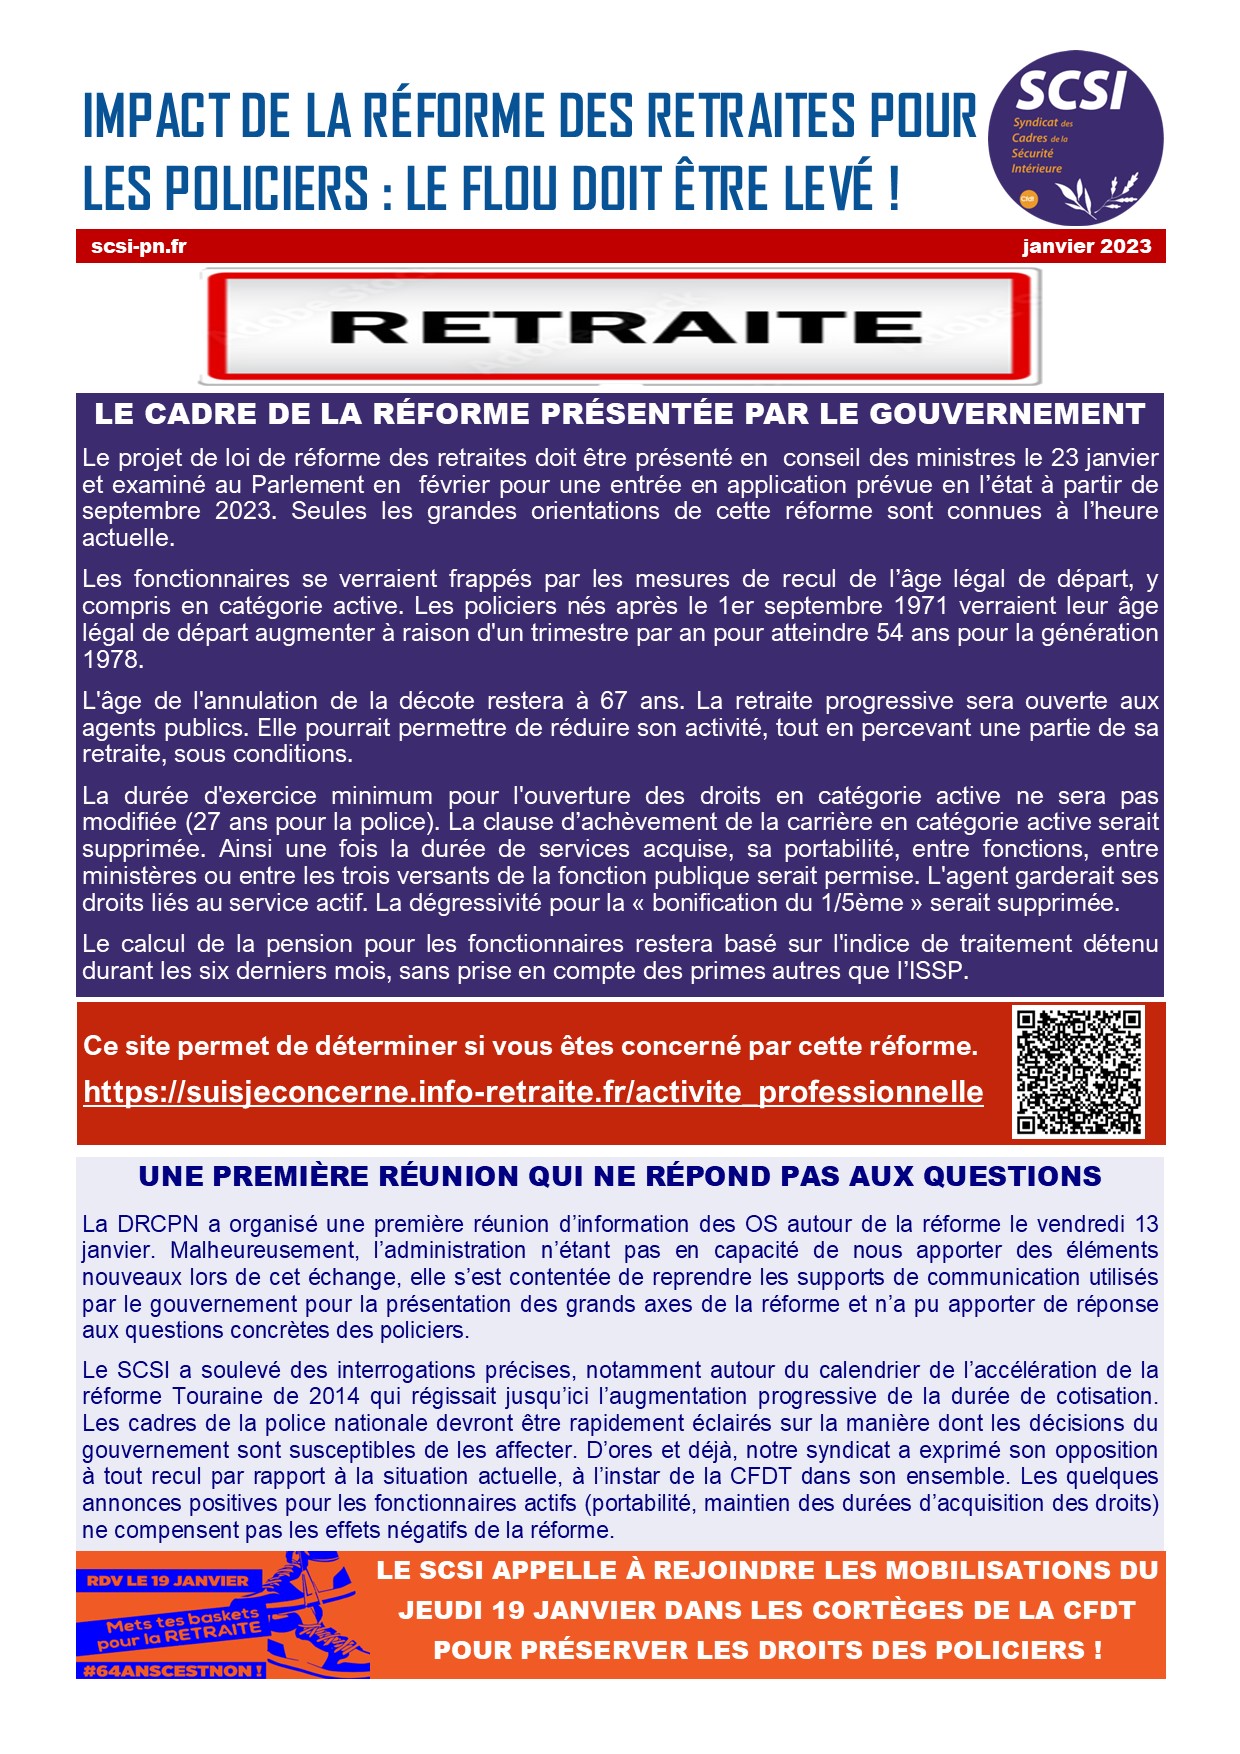 IMPACT DE LA RÉFORME DES RETRAITES POUR LES POLICIERS : LE FLOU DOIT ÊTRE LEVÉ !